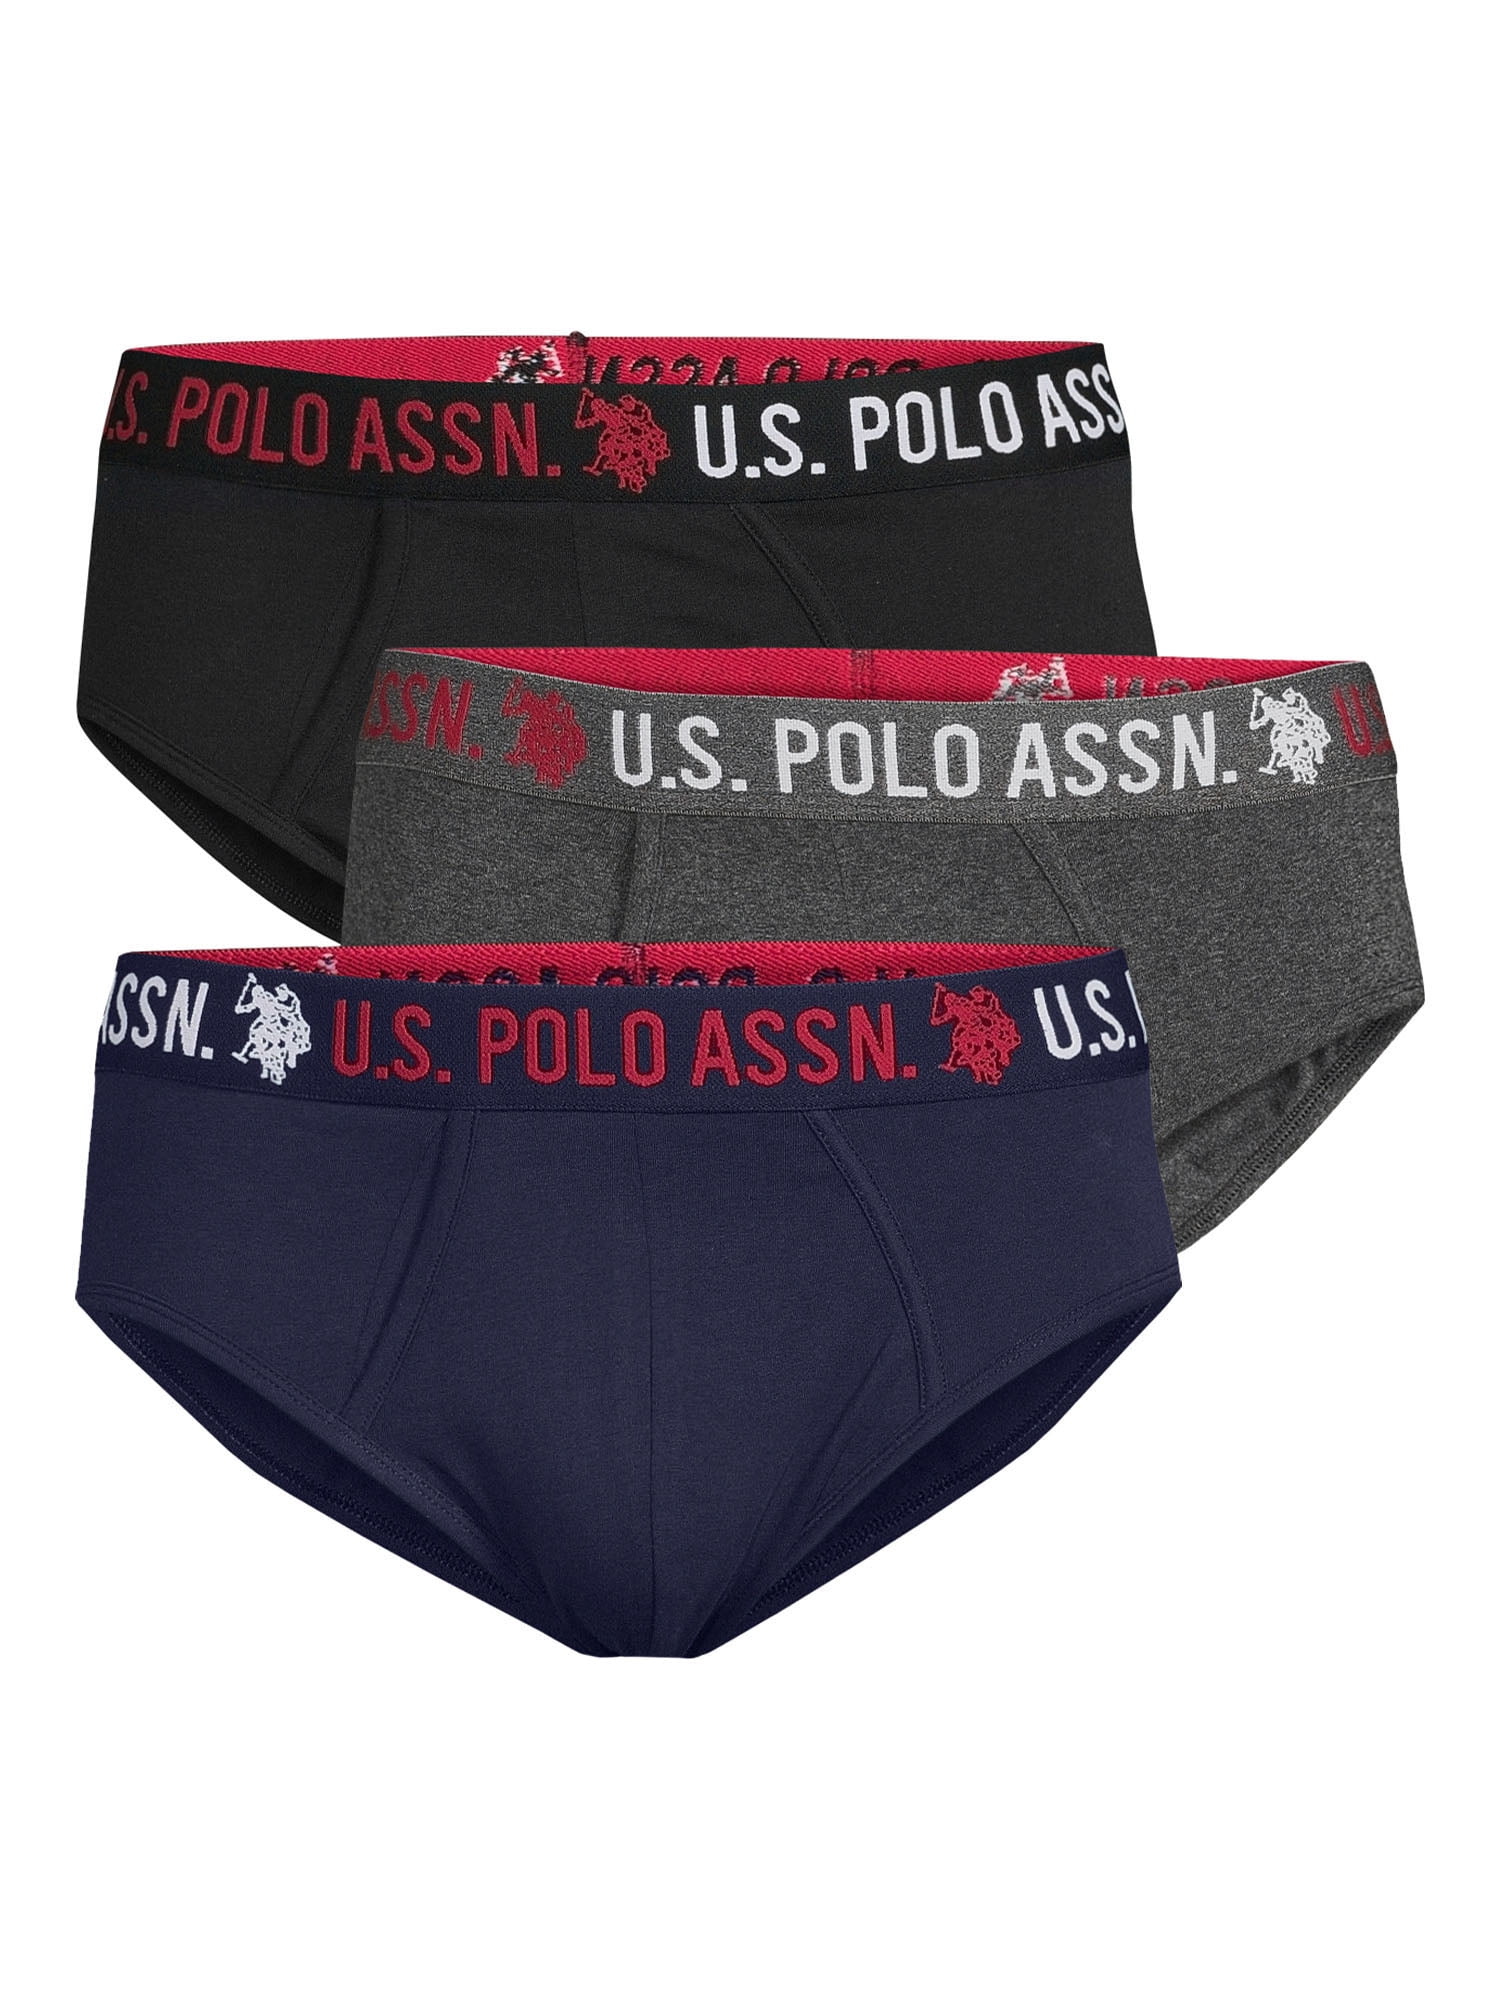 U.S. Polo Assn. Men's Cotton Stretch Briefs Underwear, 3-Pack